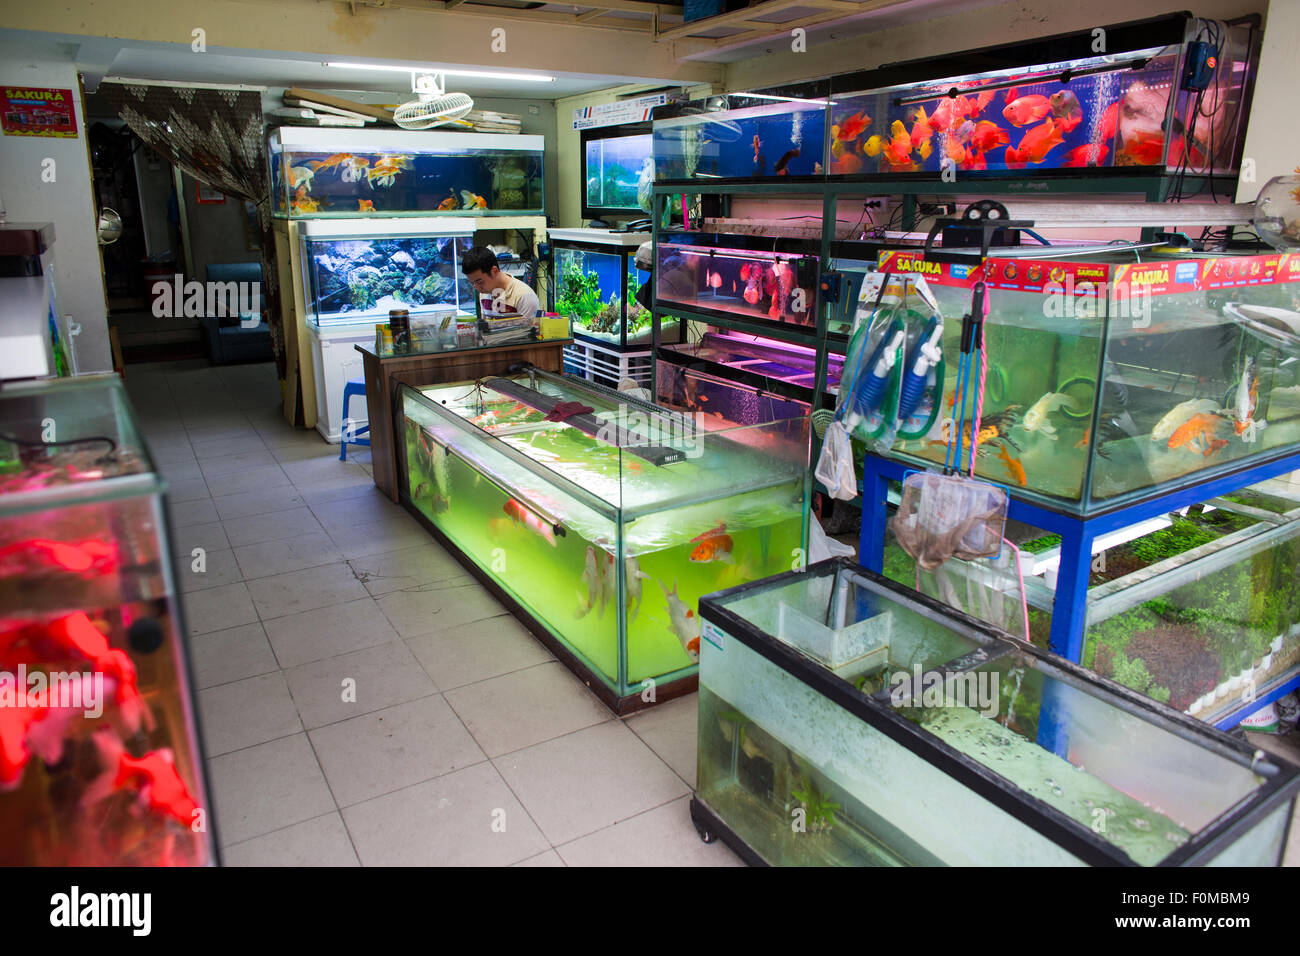 AkouaShop - Boutique Aquariophilie : Aquarium, matériel et accessoires en  ligne dans notre magasin